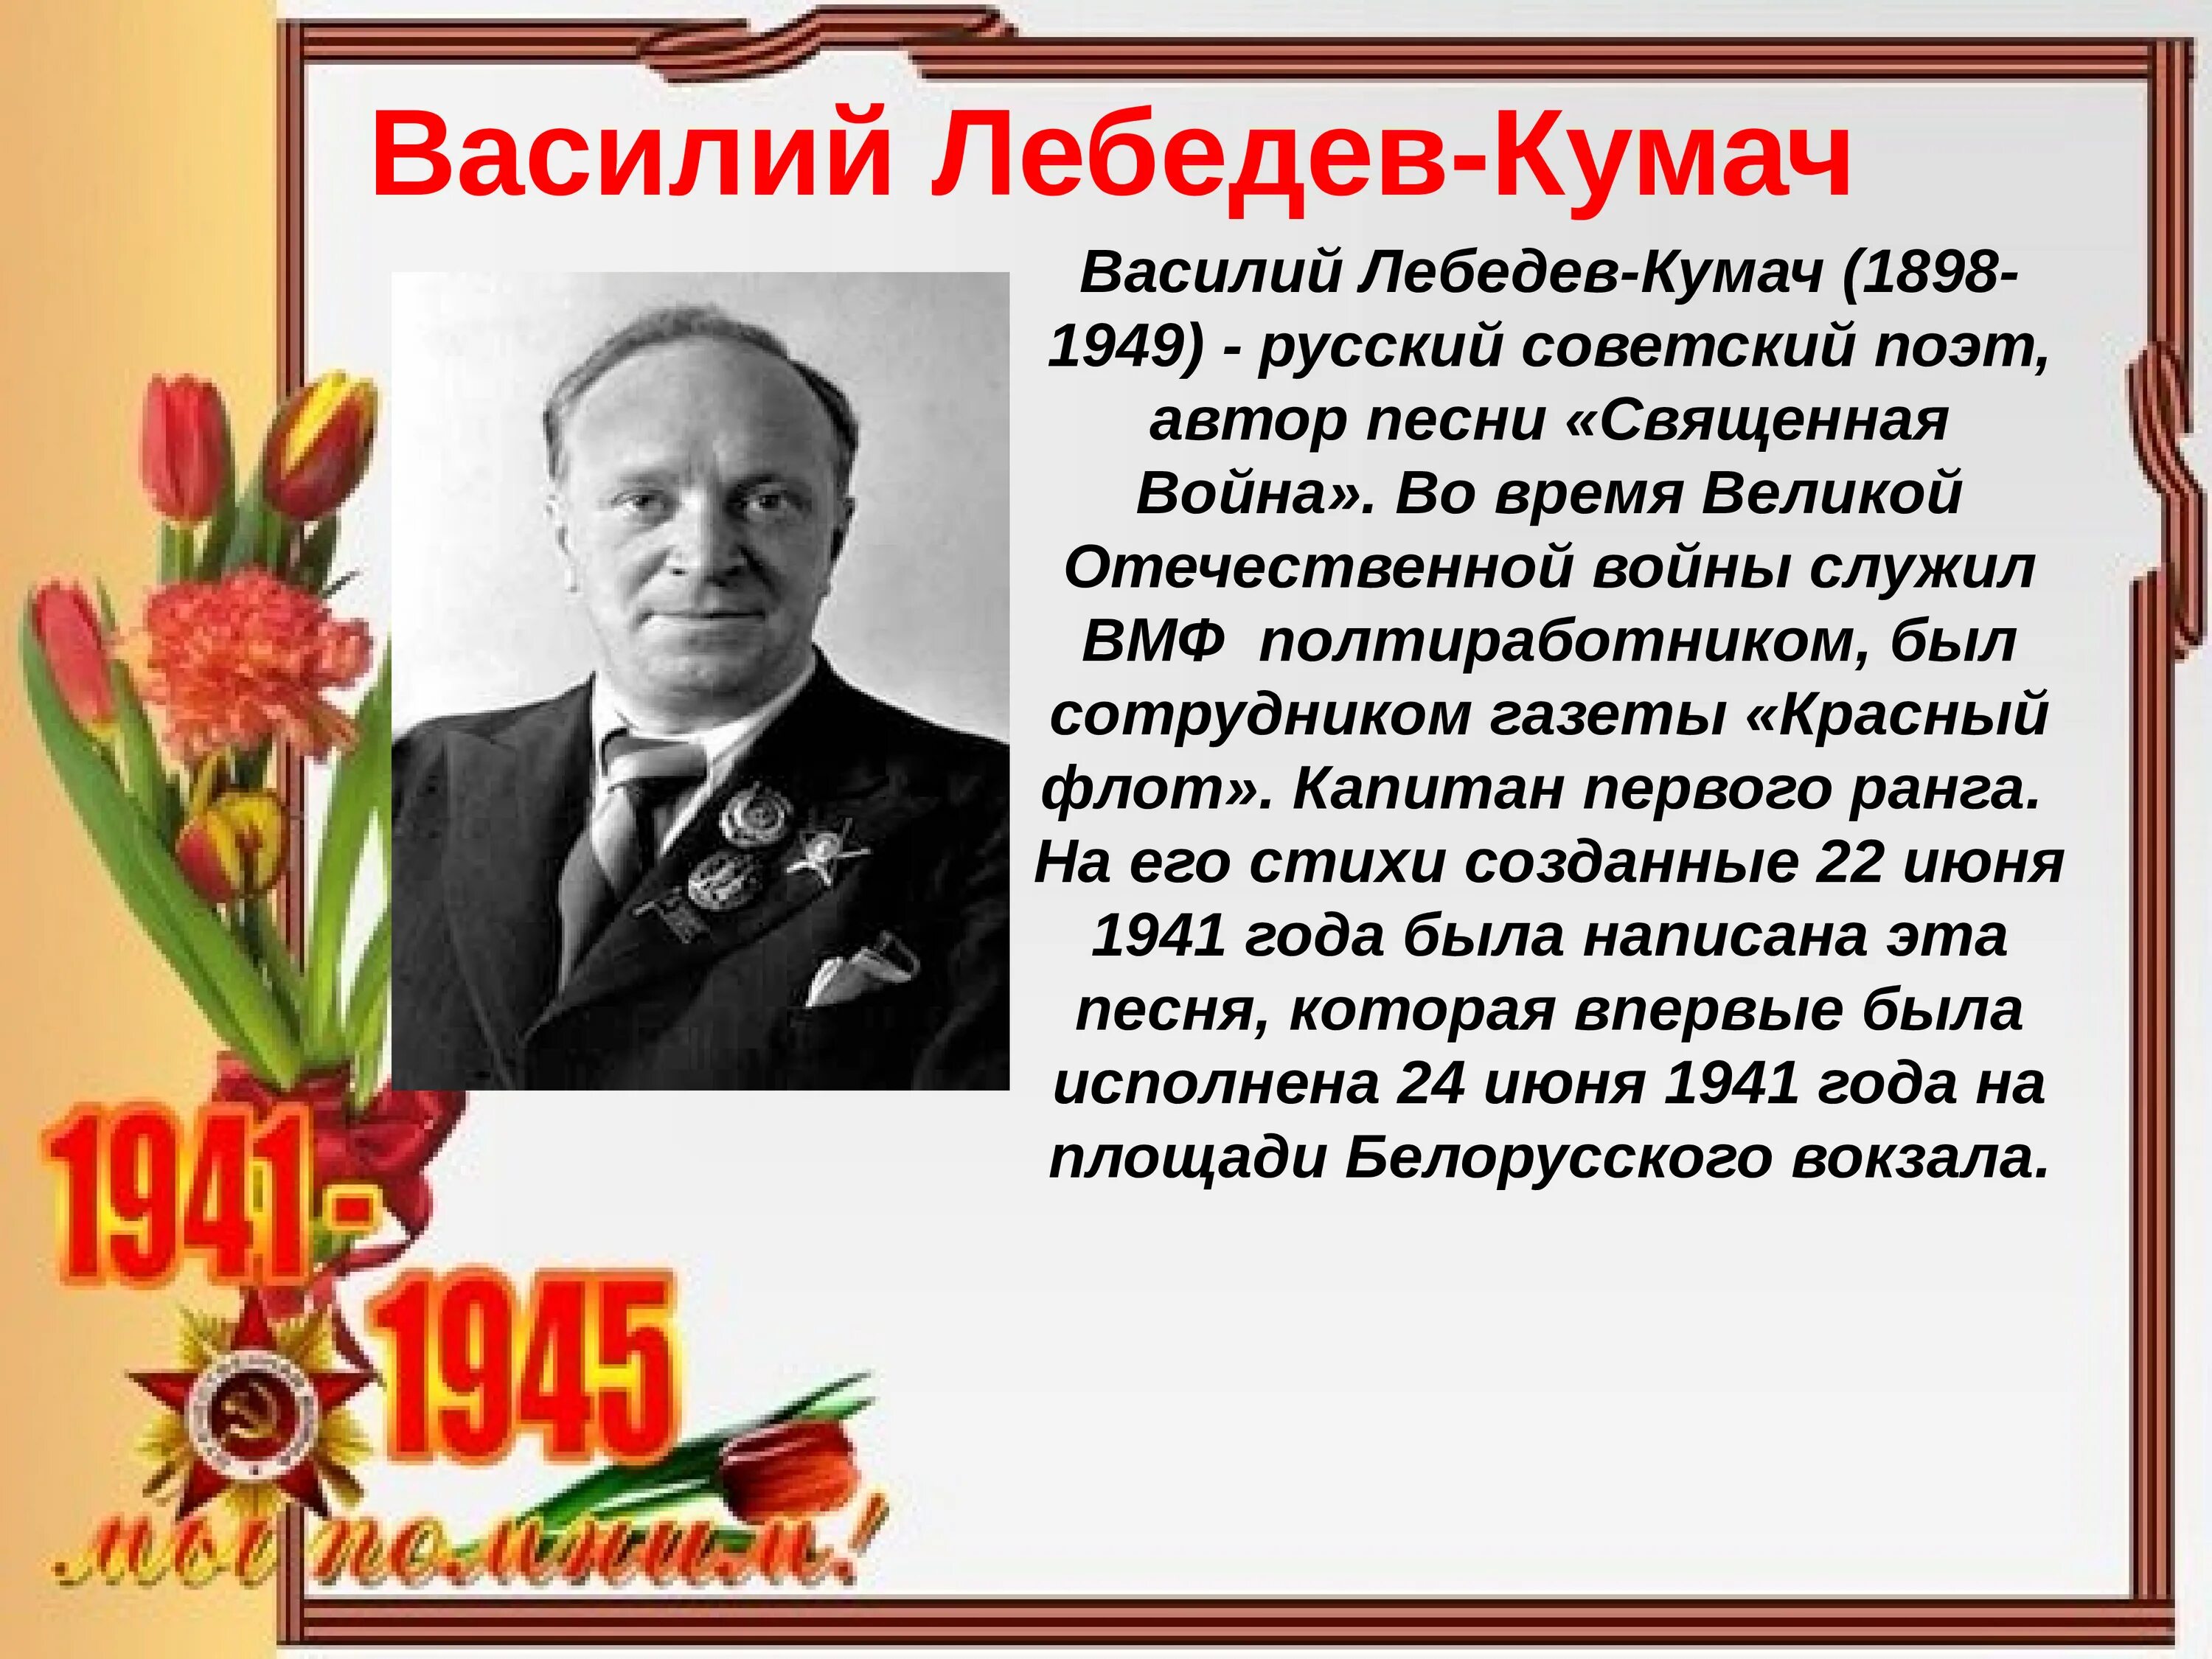 Песни написанные в 1945 году. Лебедев Кумач поэт фронтовик. Писатели-фронтовики Великой Отечественной войны.